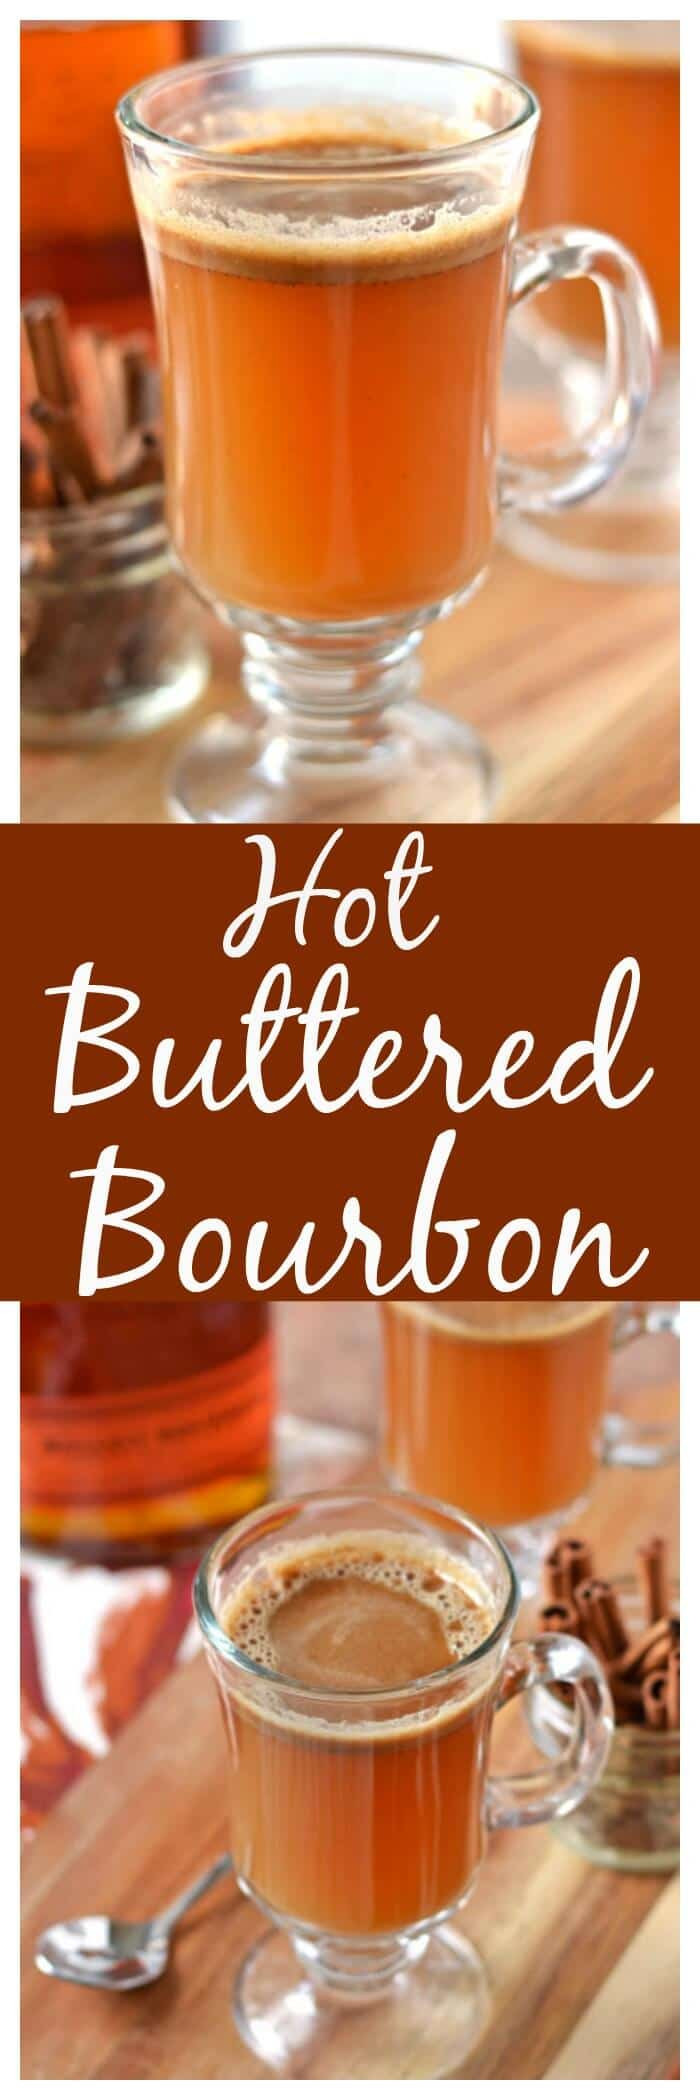 Winter Bourbon Drinks
 Hot Buttered Bourbon